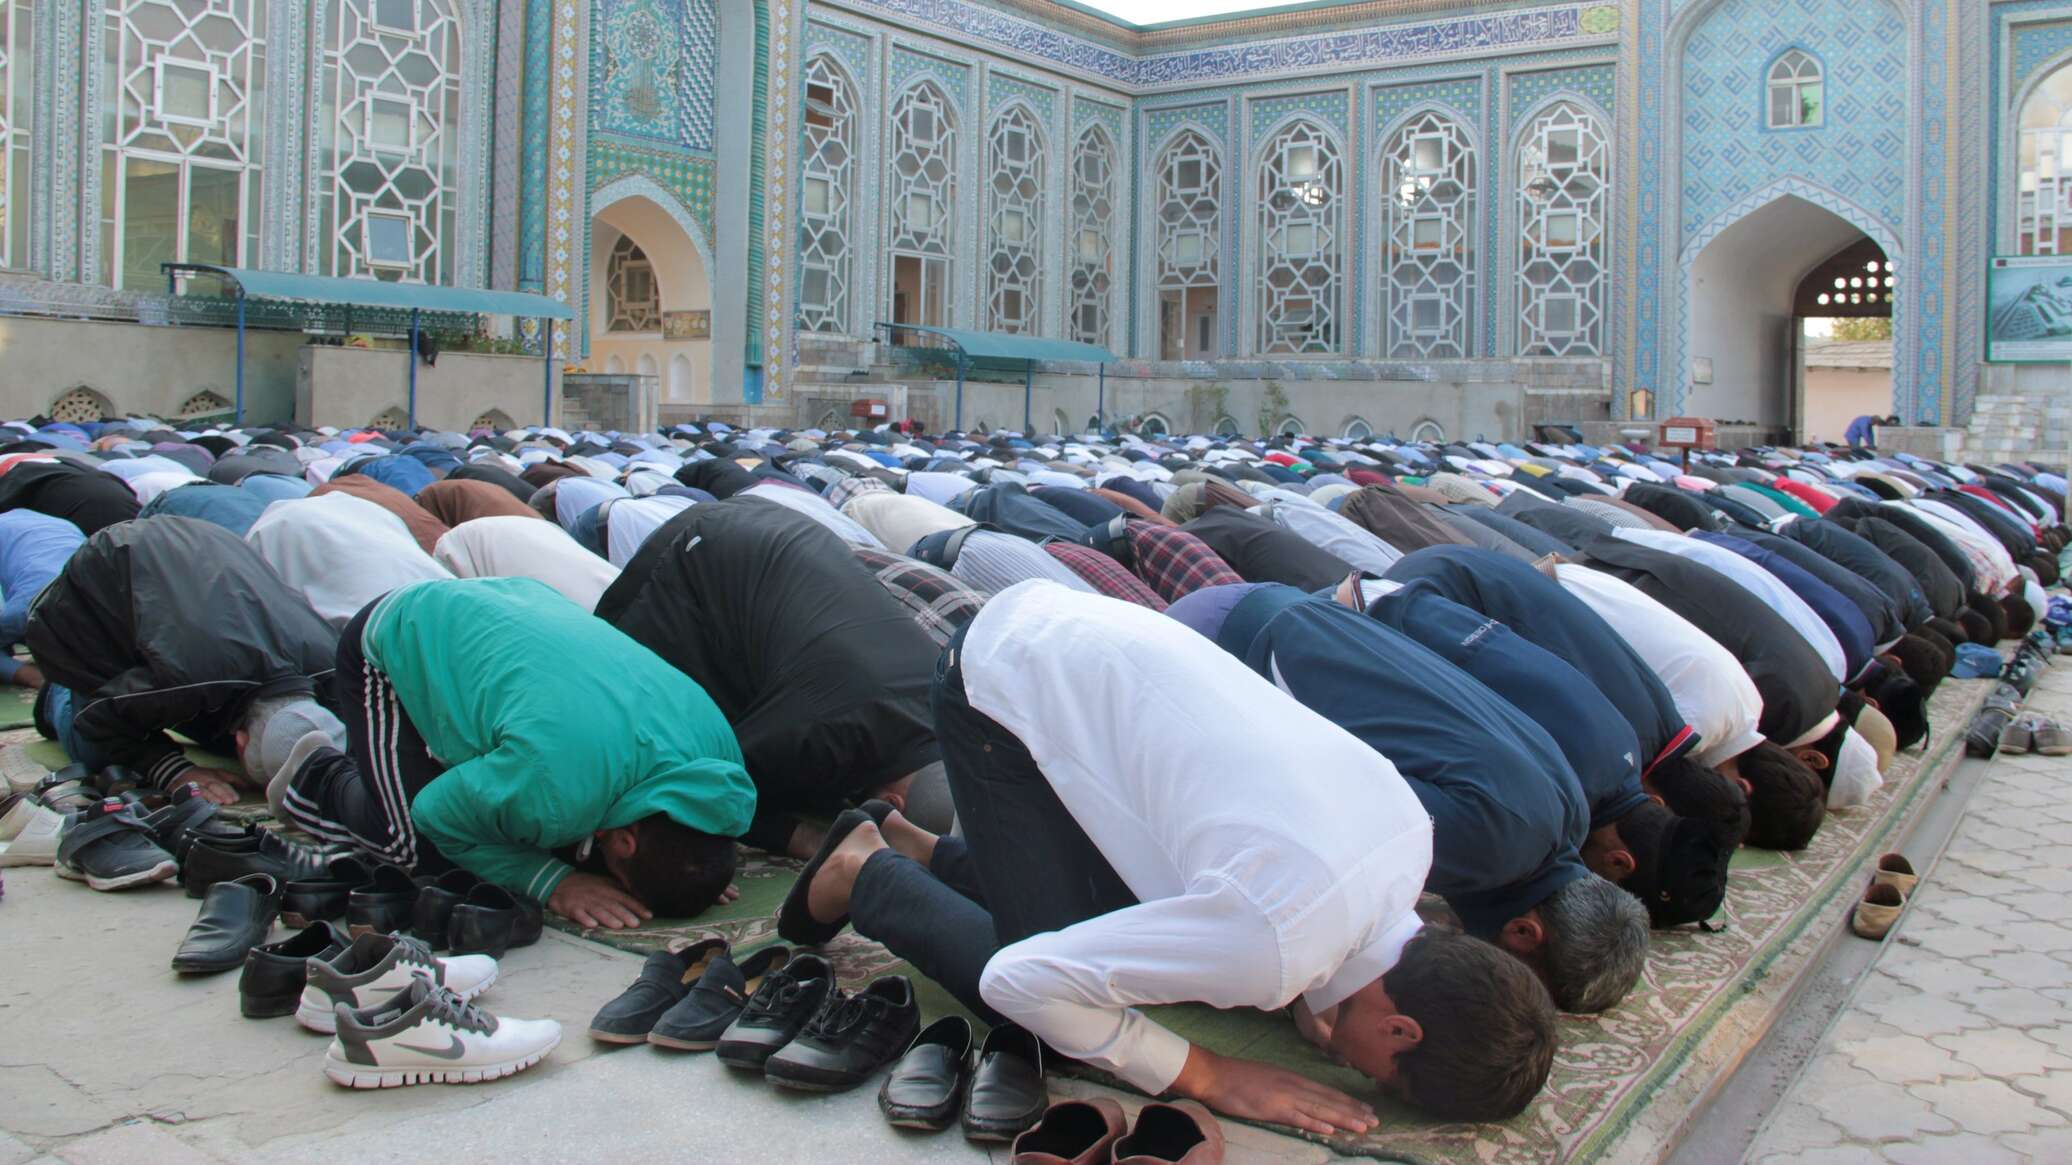 Таджикская молитва